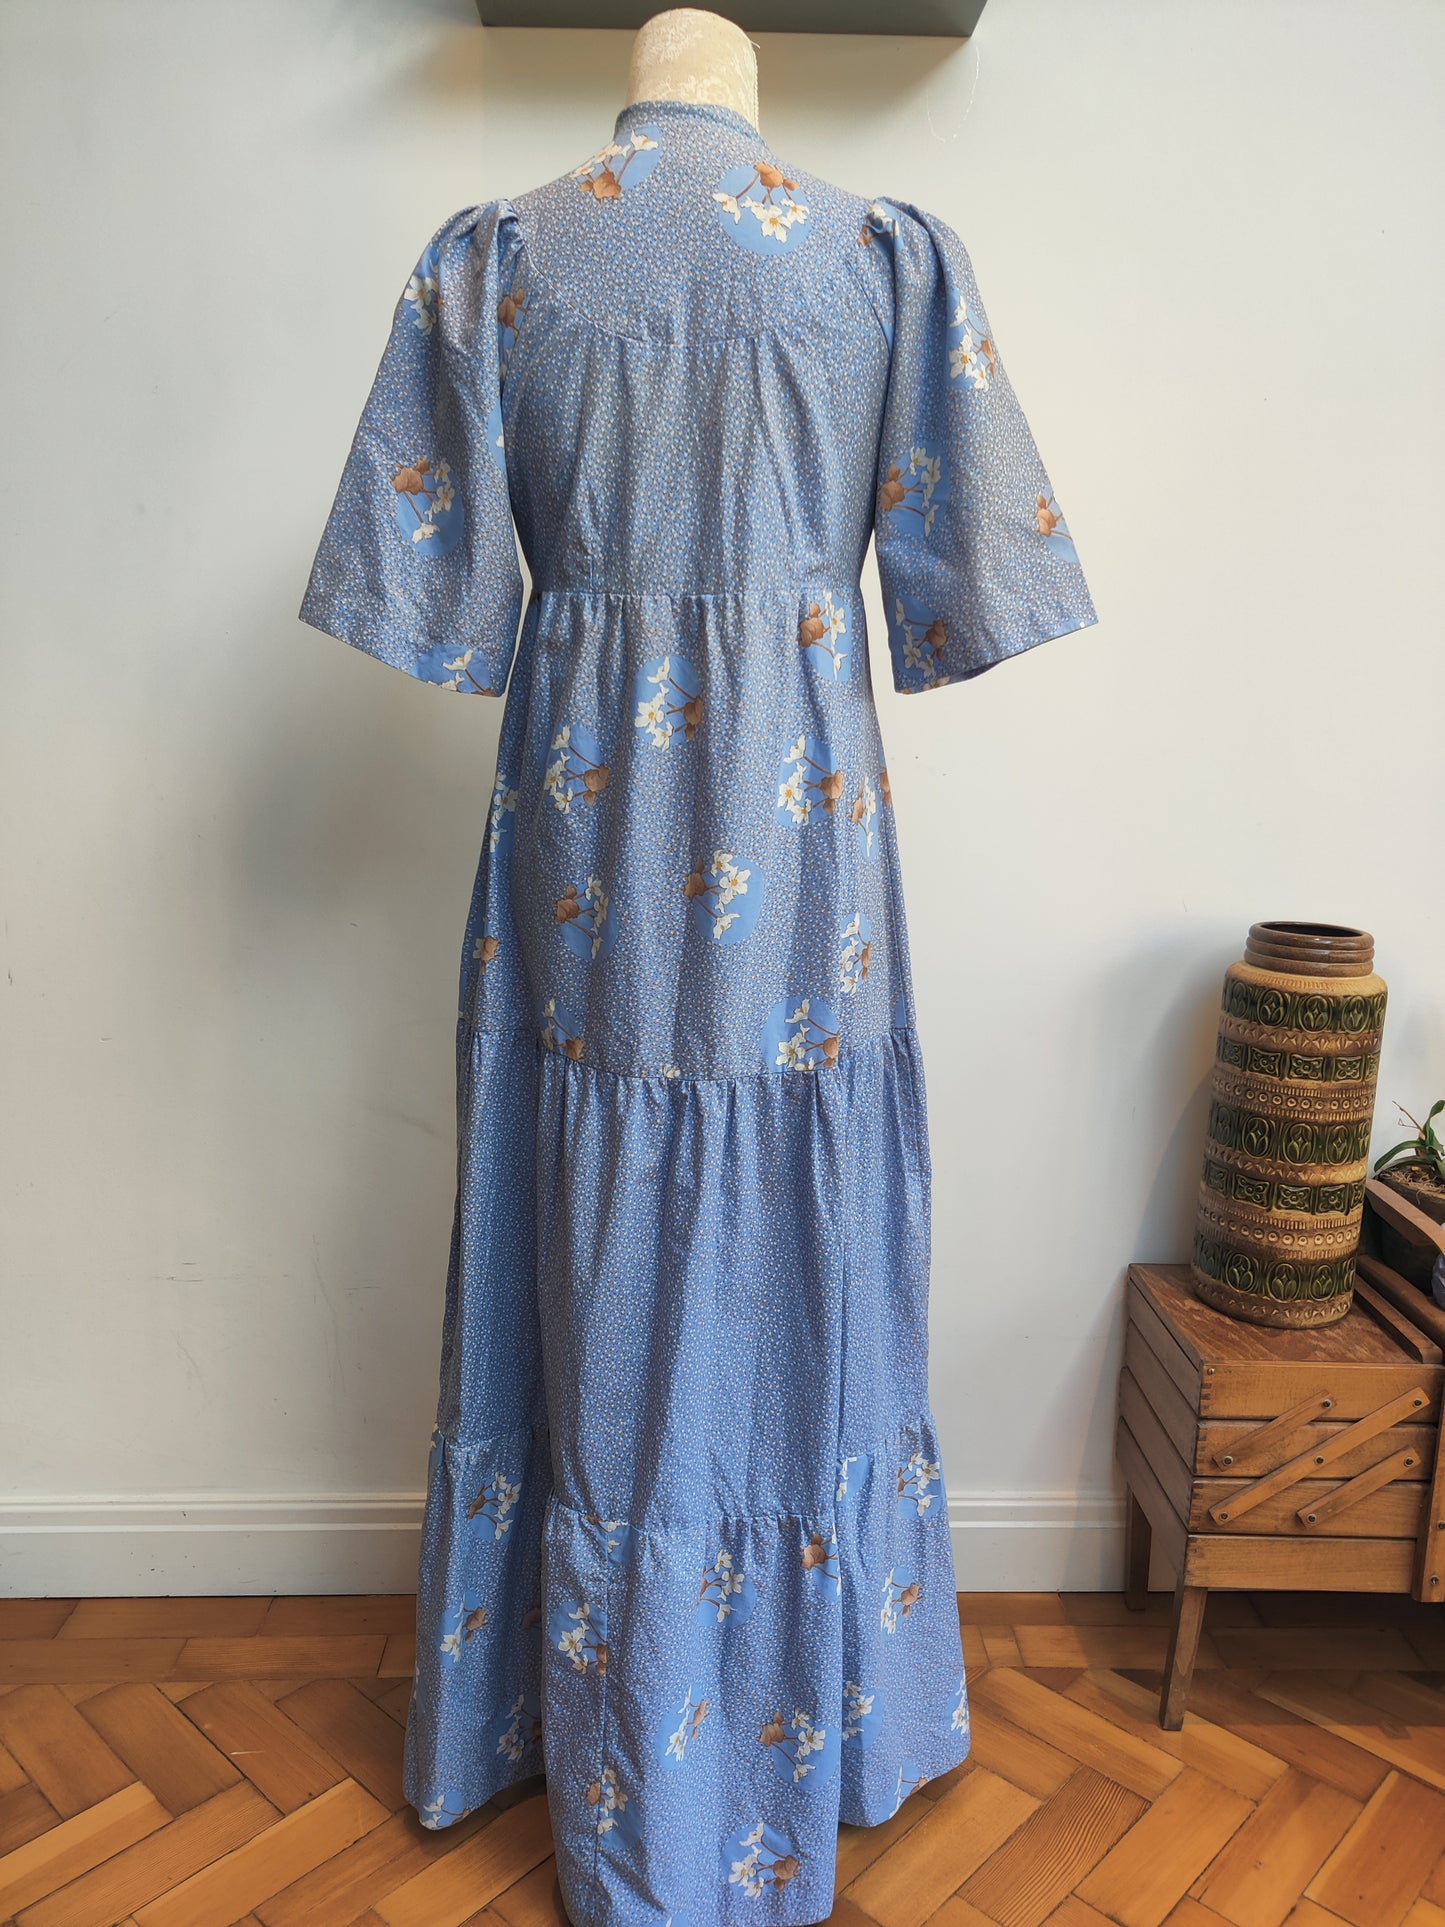 Blue floral maxi dress size 8-10